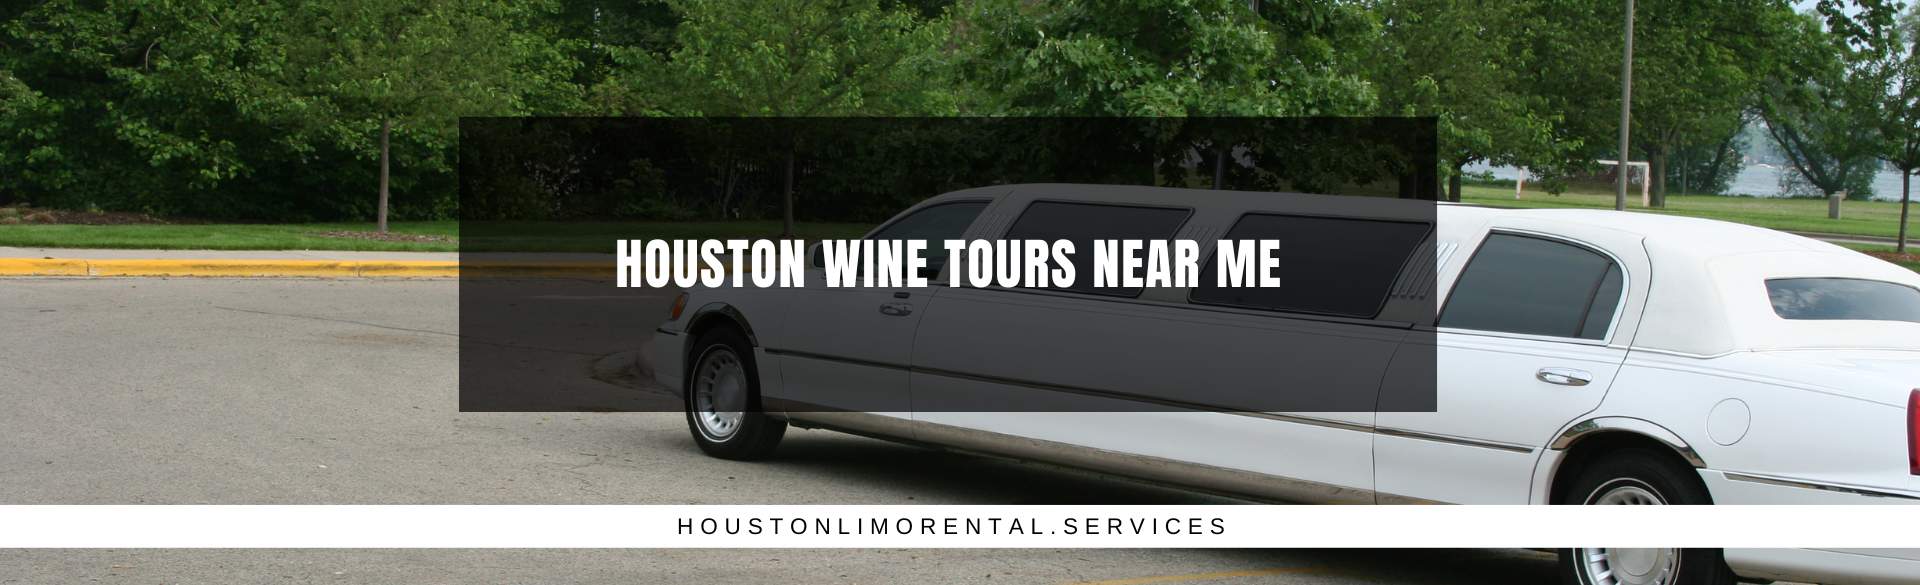 Houston Wine Tours Near Me